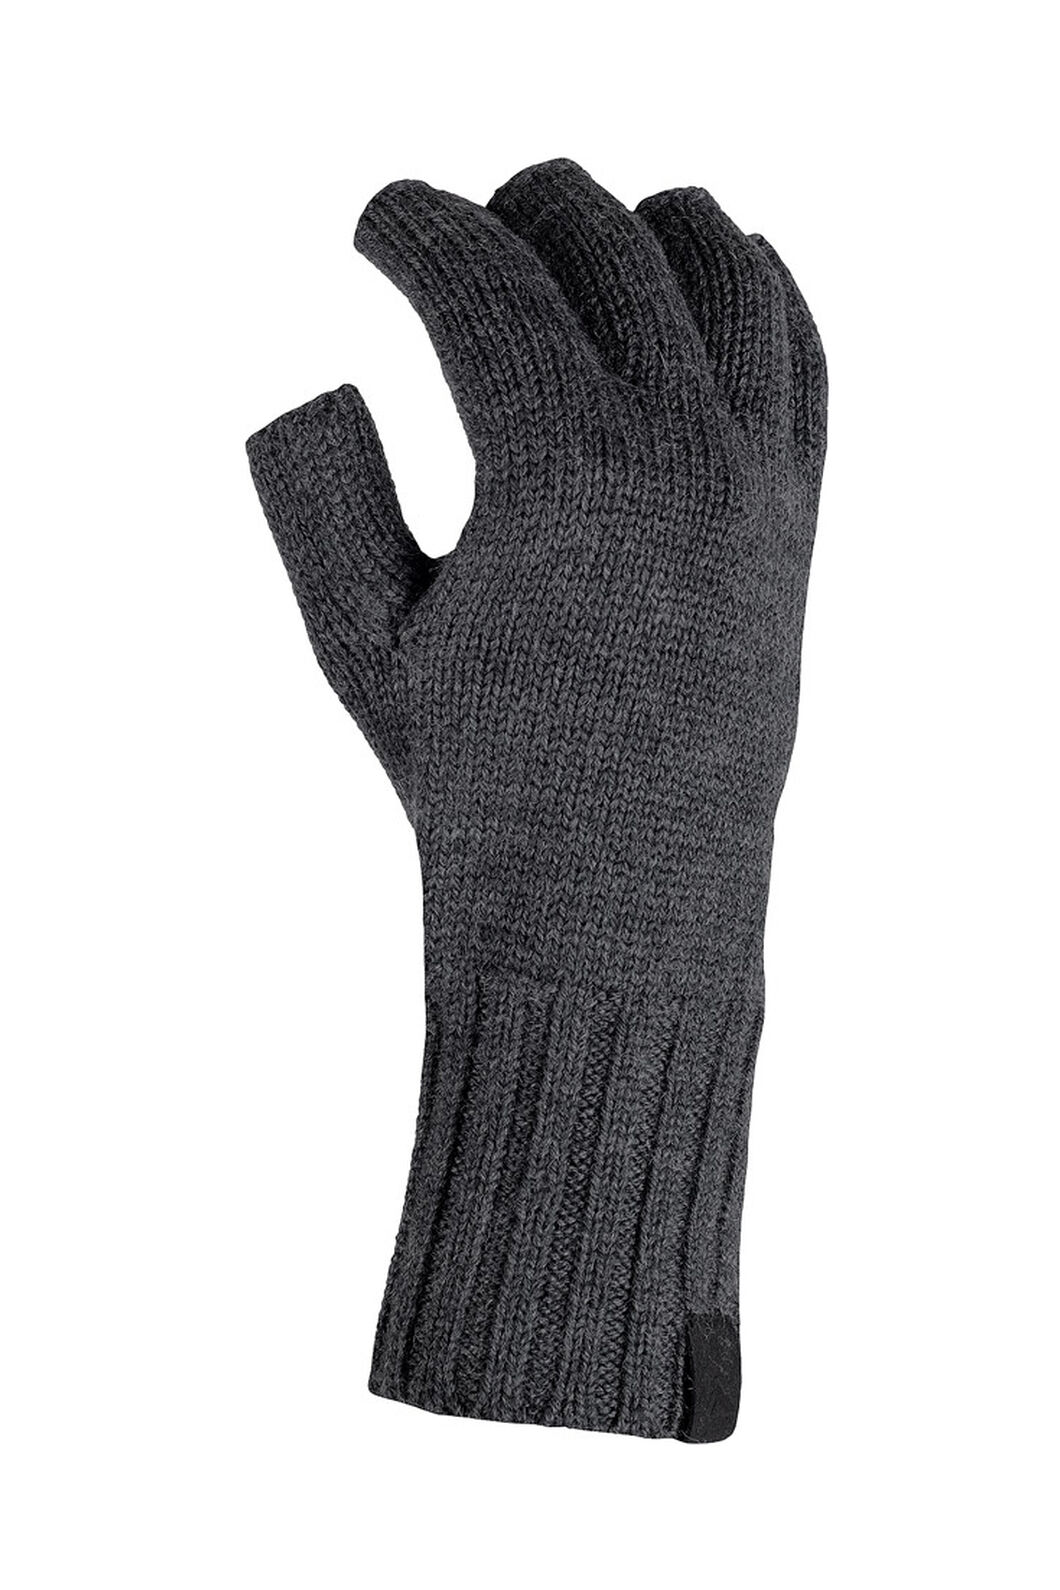 Merino Fingerless Gloves 